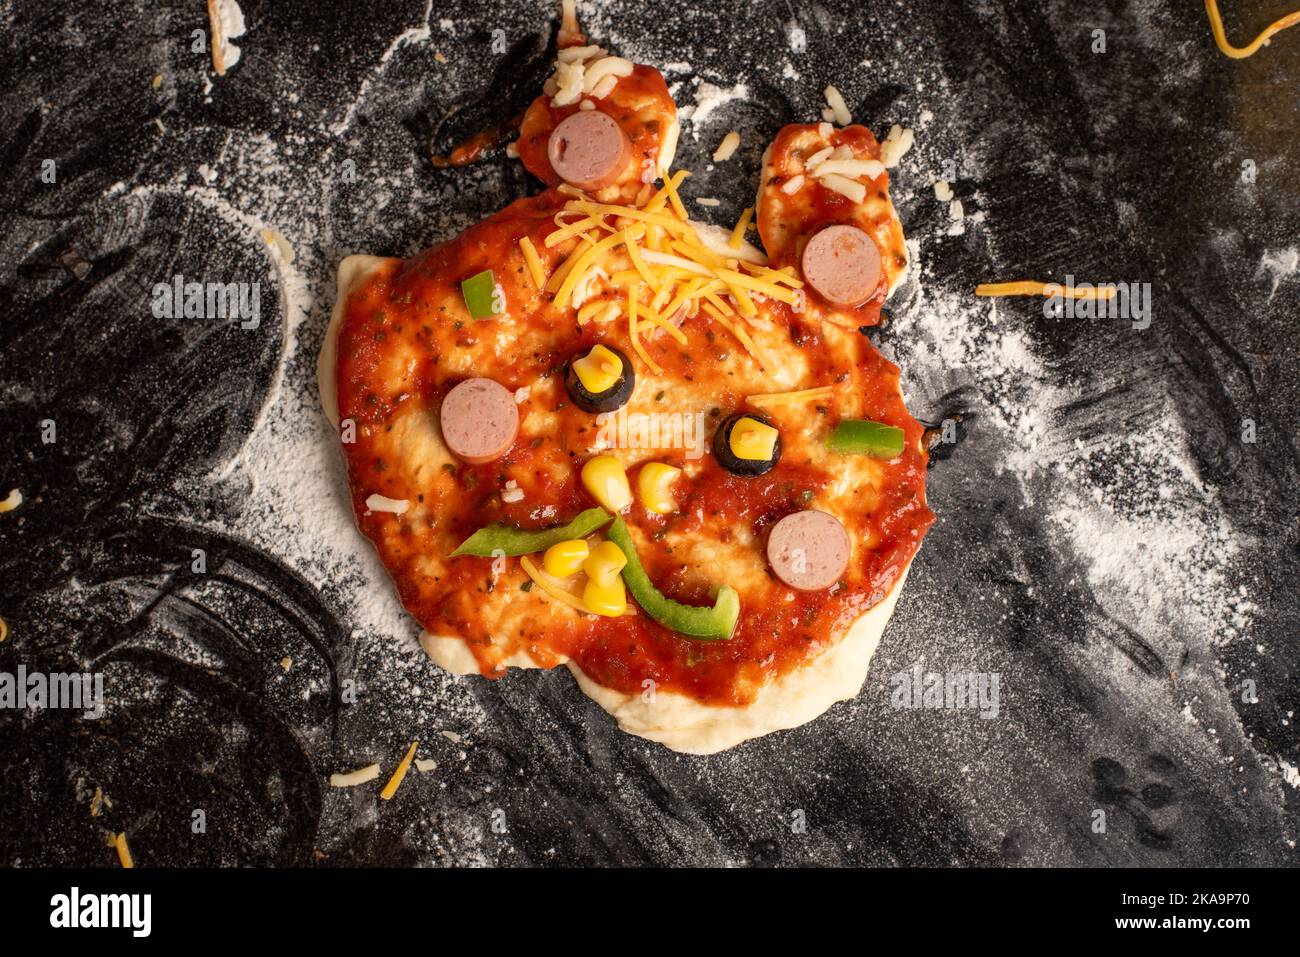 La actividad de hacer pizza con los niños ayuda a mejorar las habilidades motoras Foto de stock